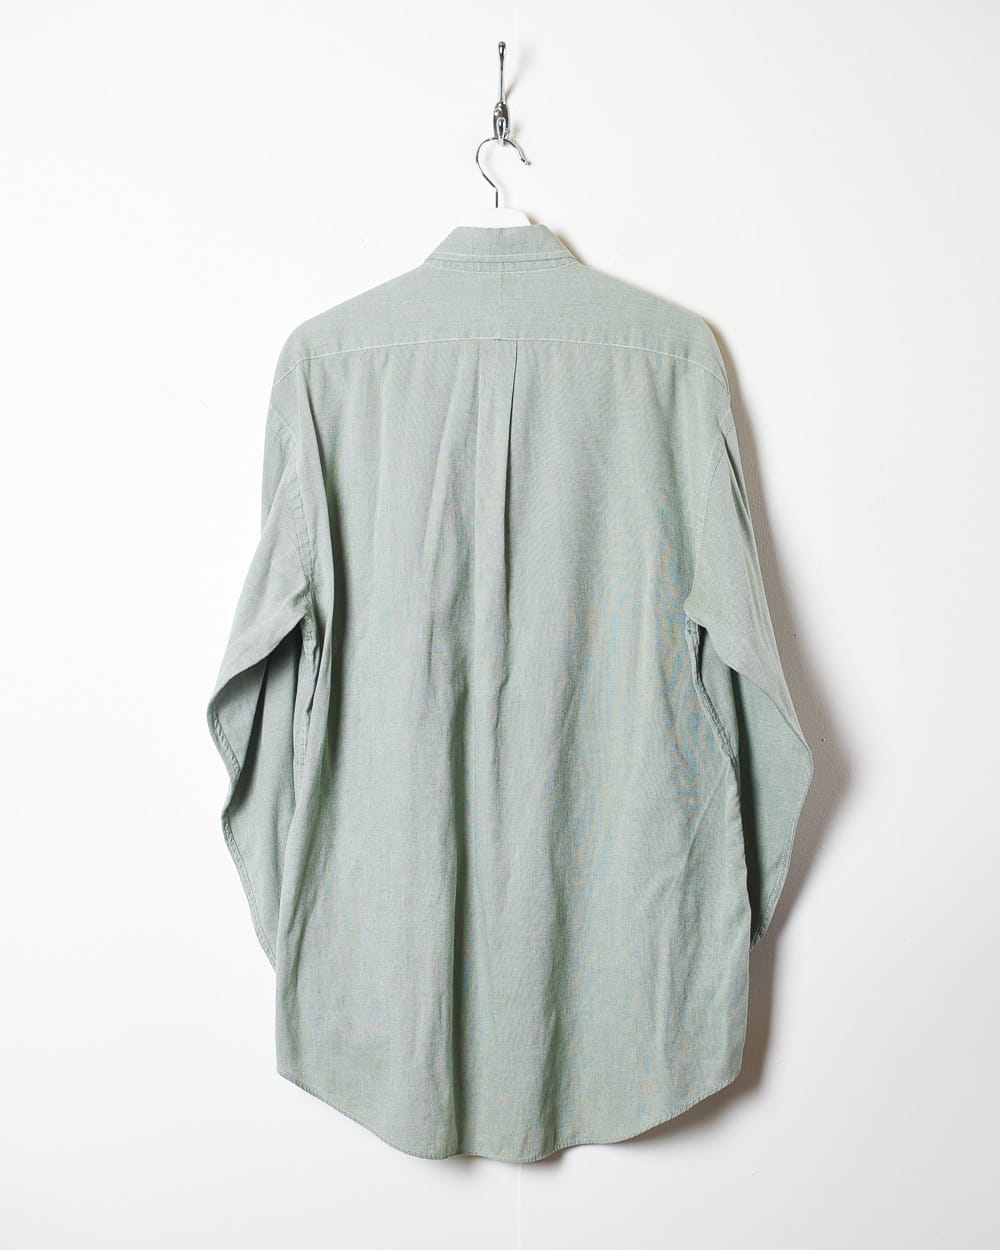 Green Polo Ralph Lauren Shirt - X-Large